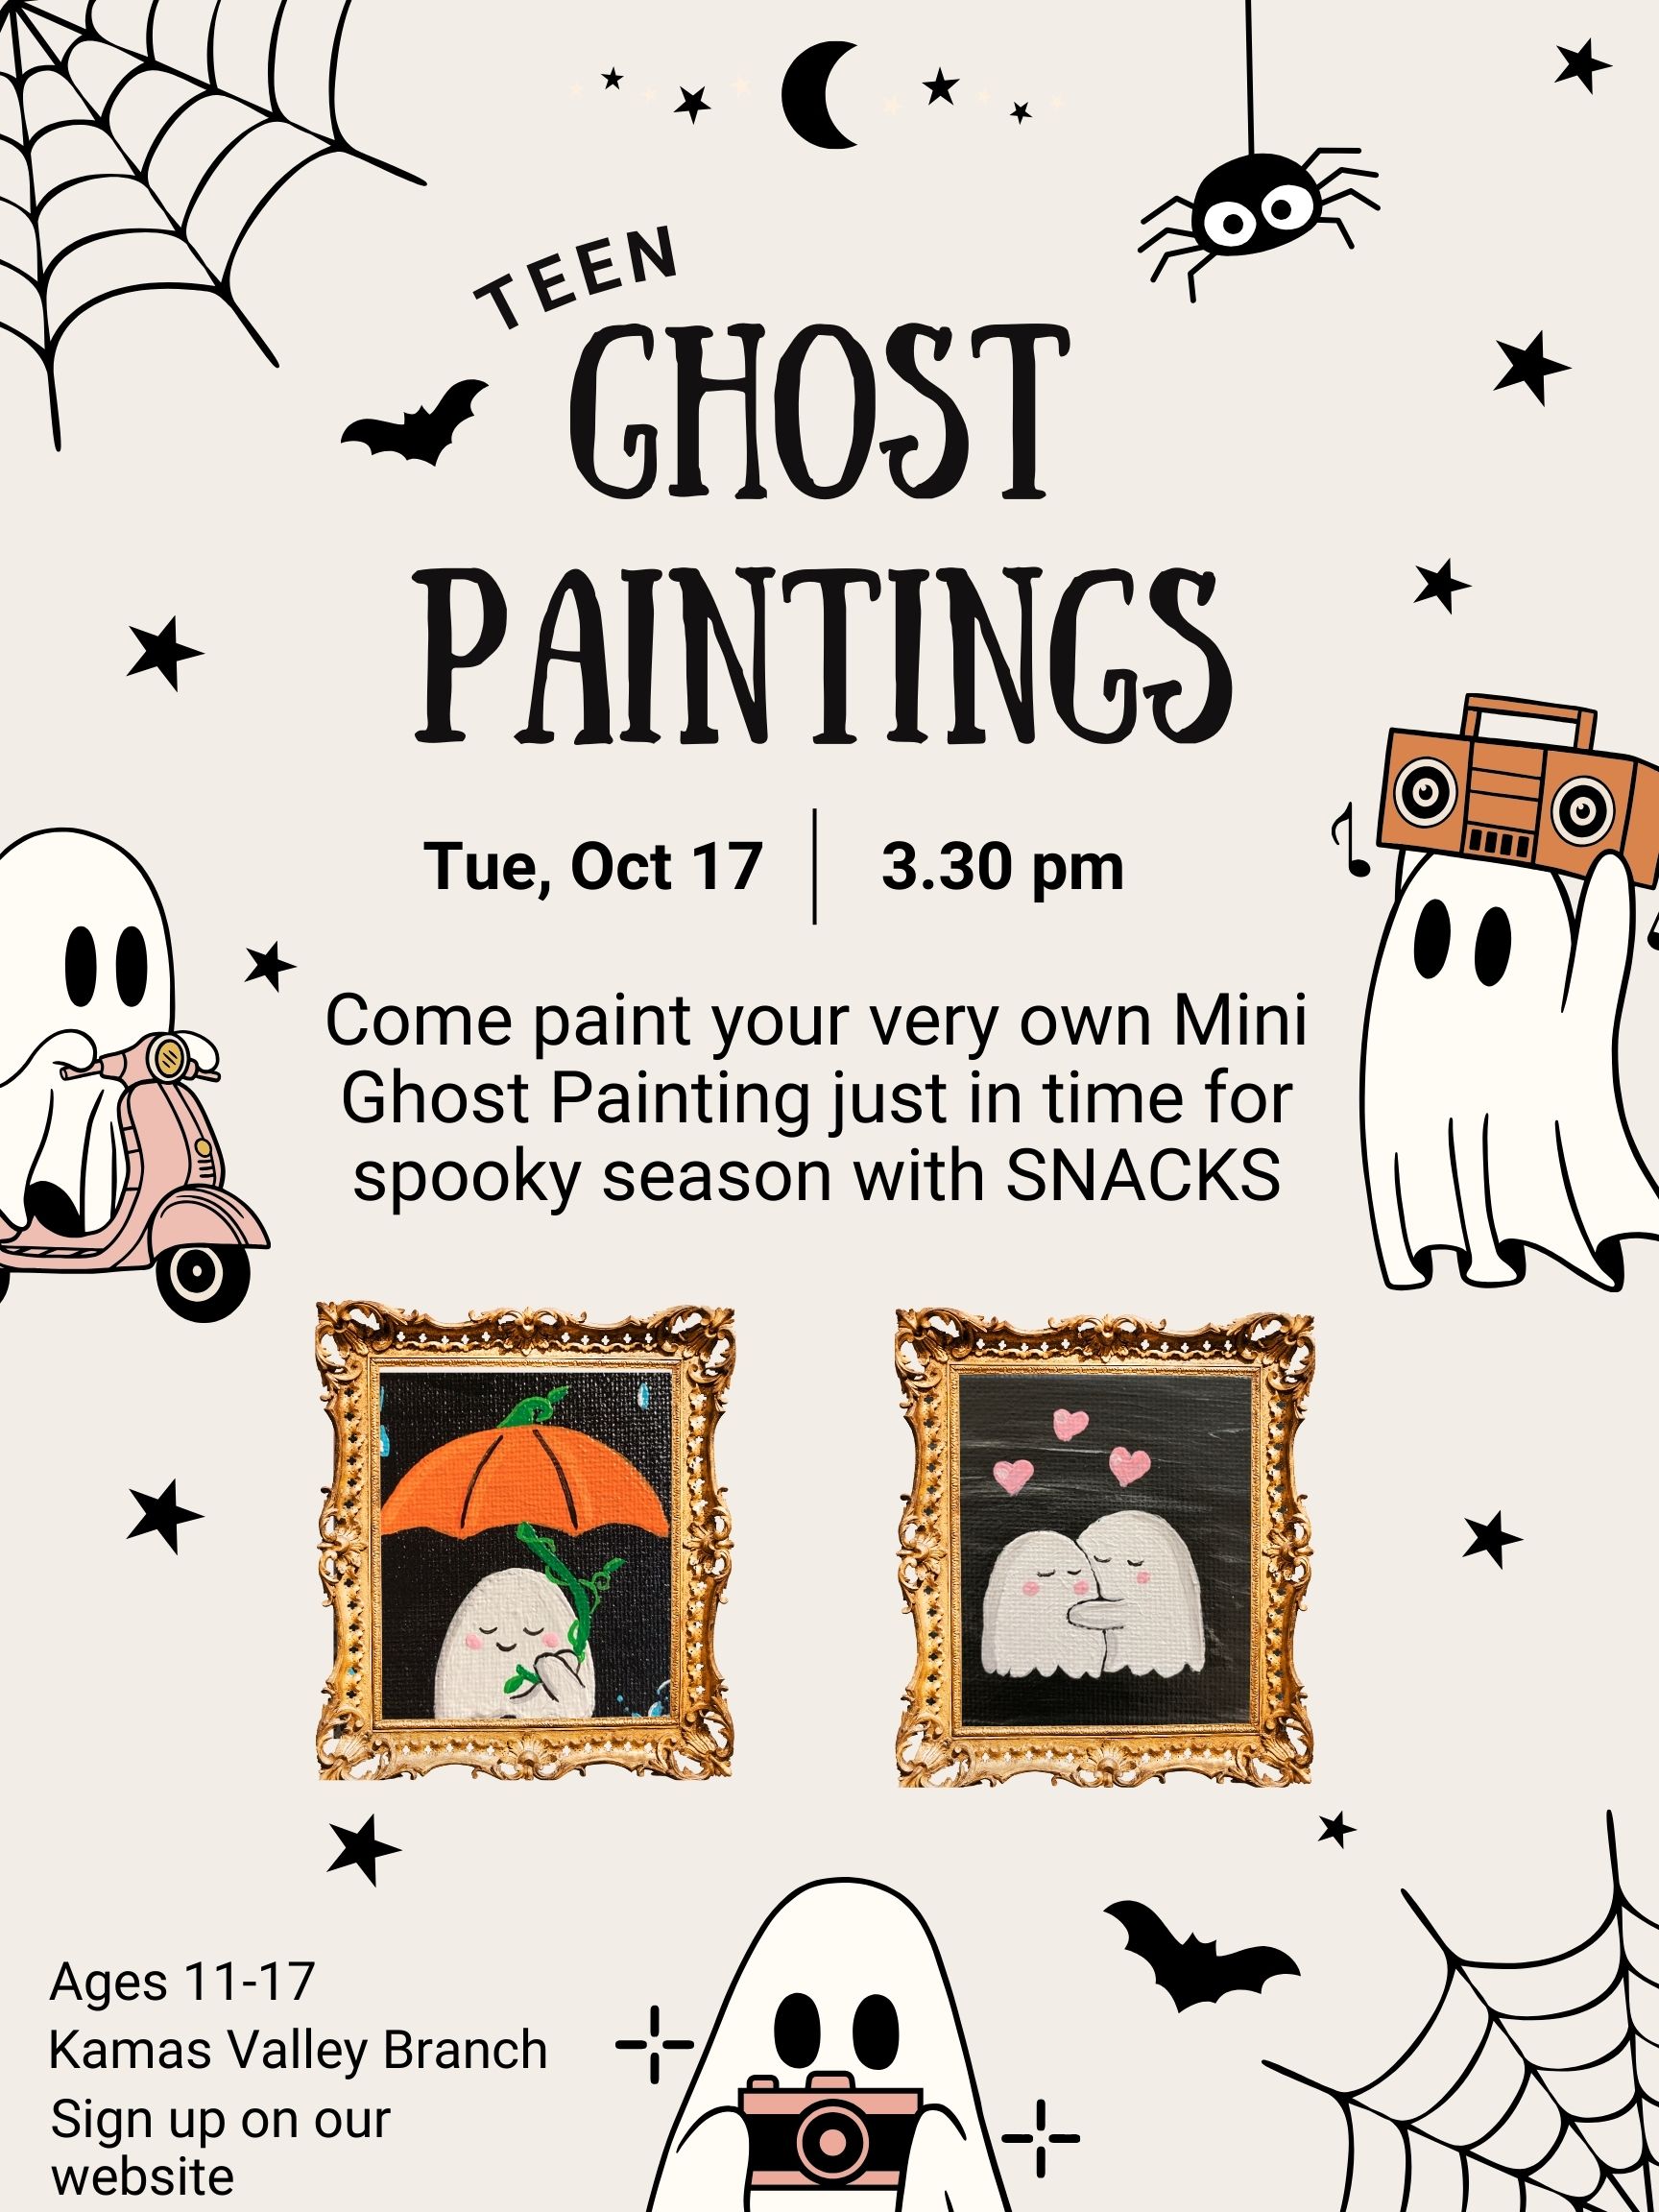 Teen Spooky Ghost Paintings at Kamas